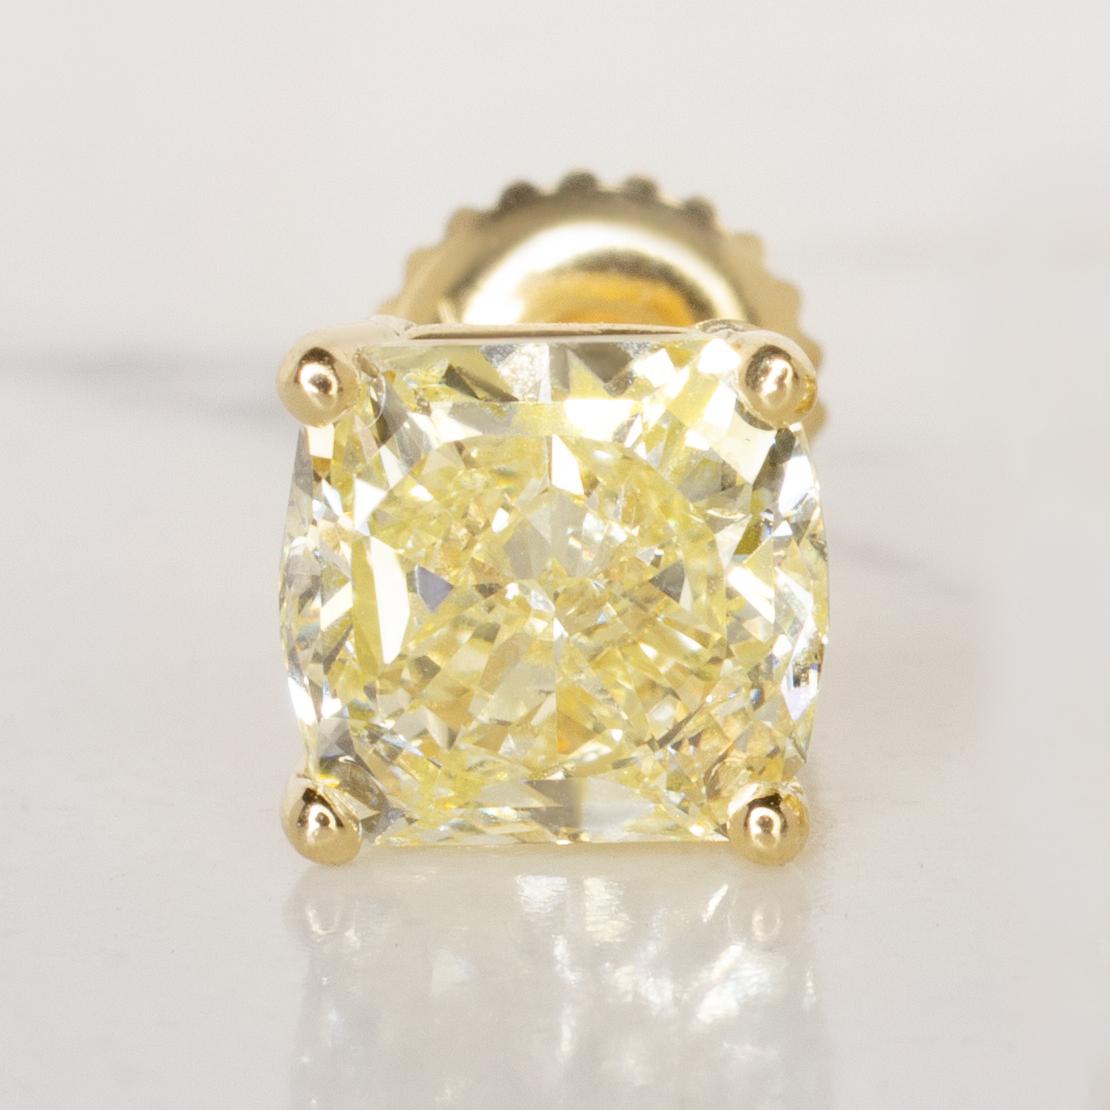 Diese sind GIA zertifiziert 2 Karat Kissen geschnitten fancy gelb, intern lupenreine Diamant-Ohrstecker in Gelbgold gesetzt. 

Diamanten im Kissenschliff vereinen die Energie eines runden Brillanten mit der Symmetrie eines Strahlenschliffs, eine